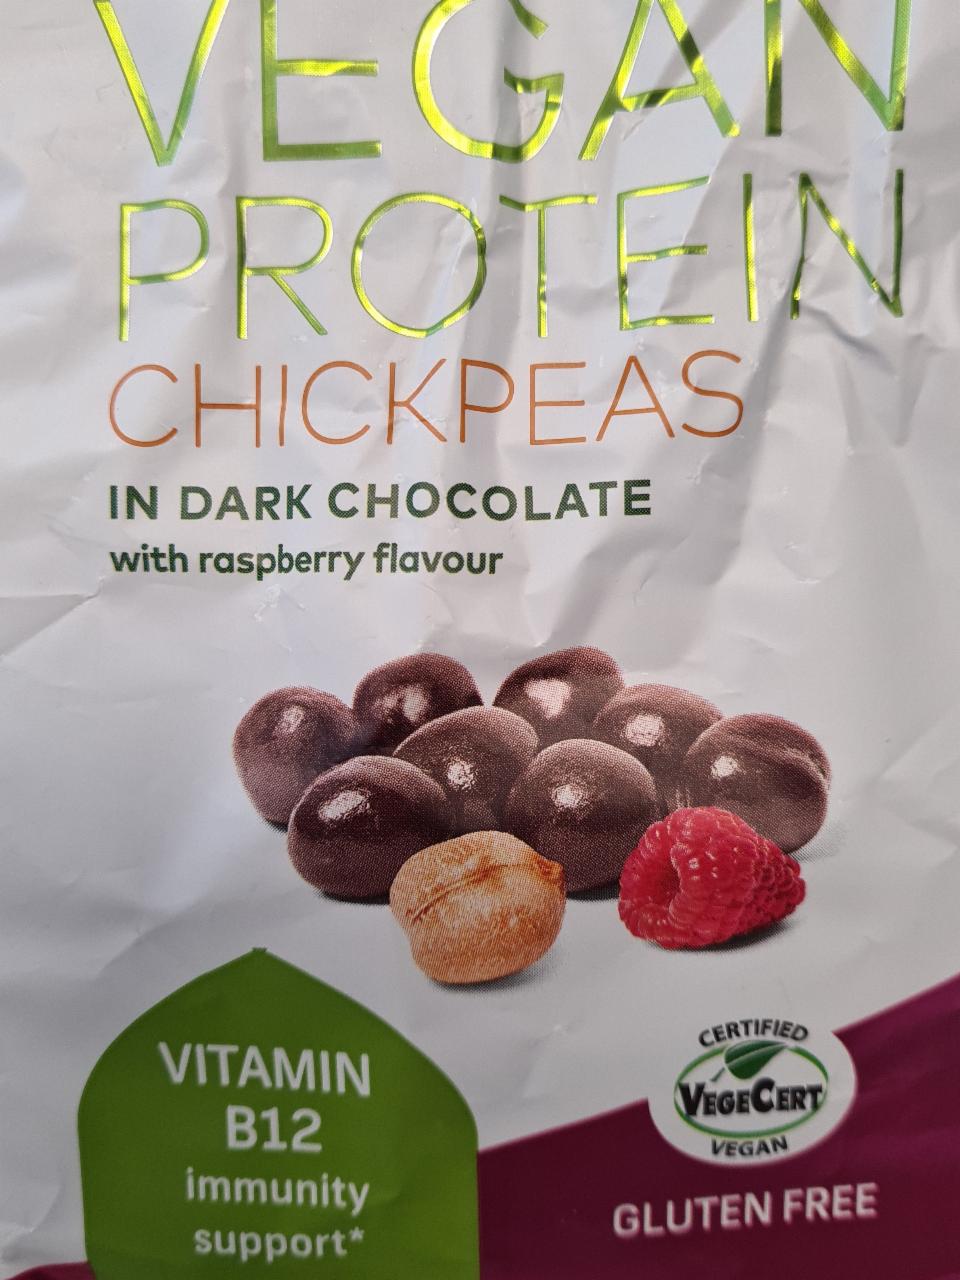 Fotografie - Vegan Protein chickpeas in dark chocolate with raspberry flavour